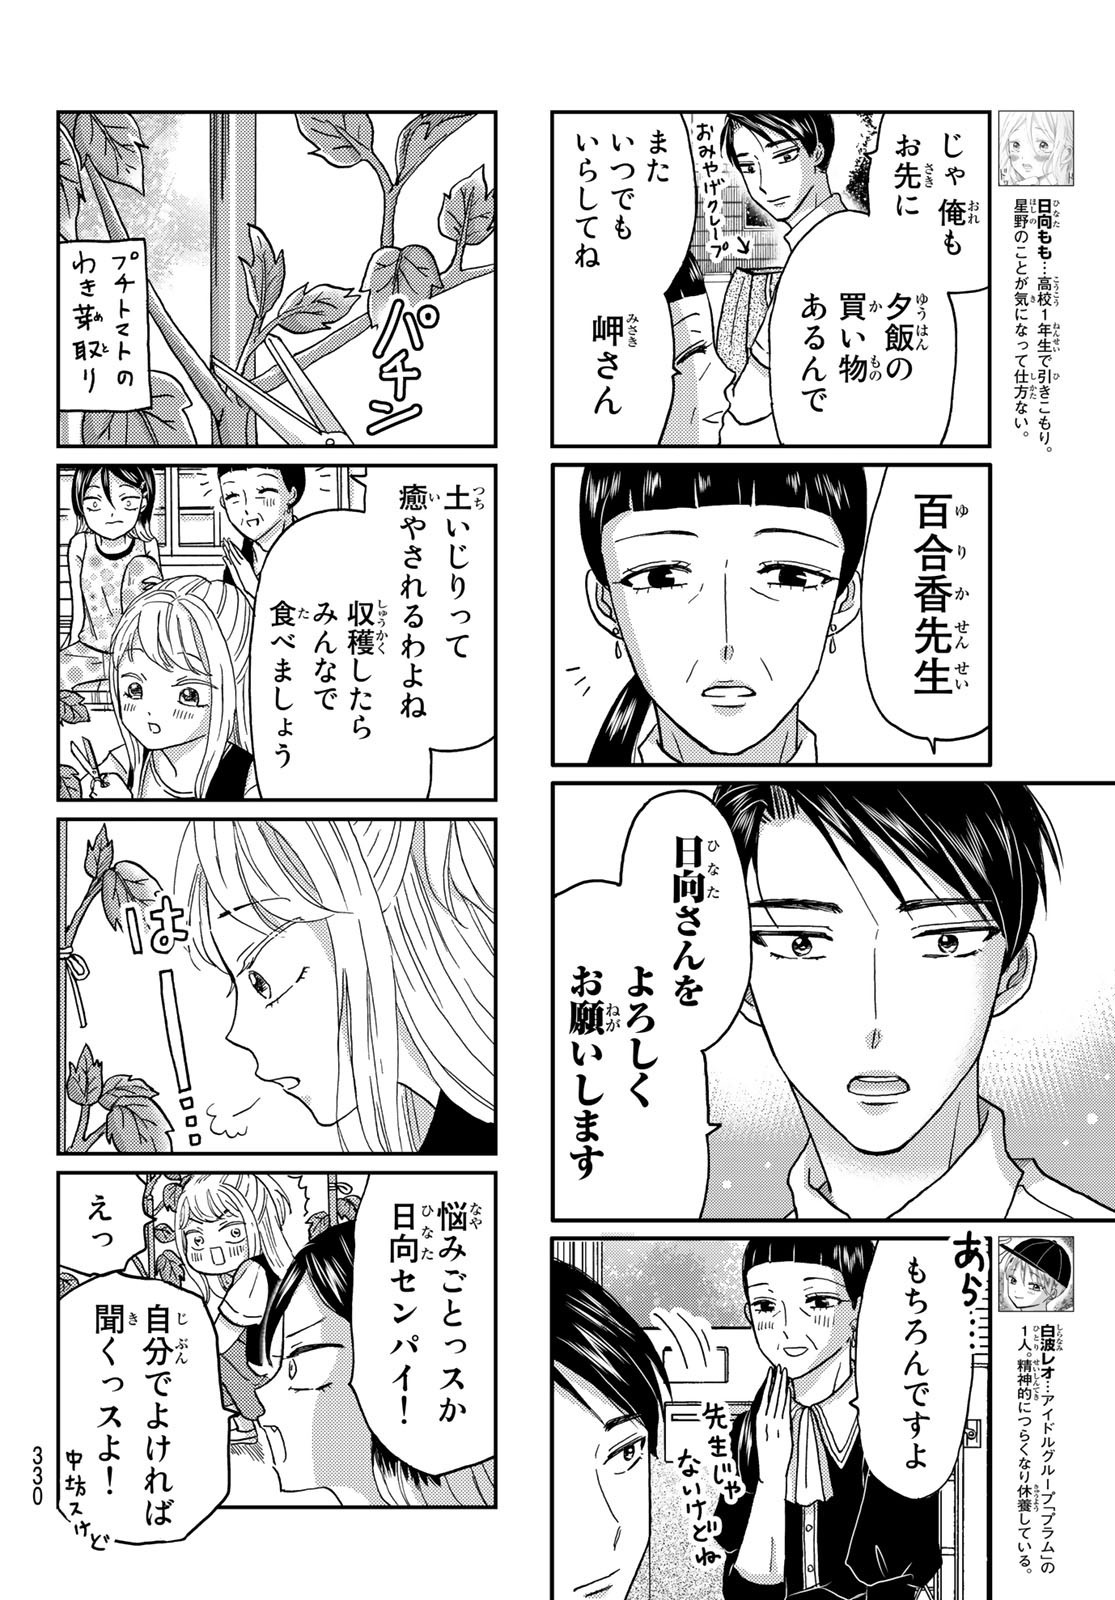 Hinata-san, Hoshino desu. - Chapter 039 - Page 4